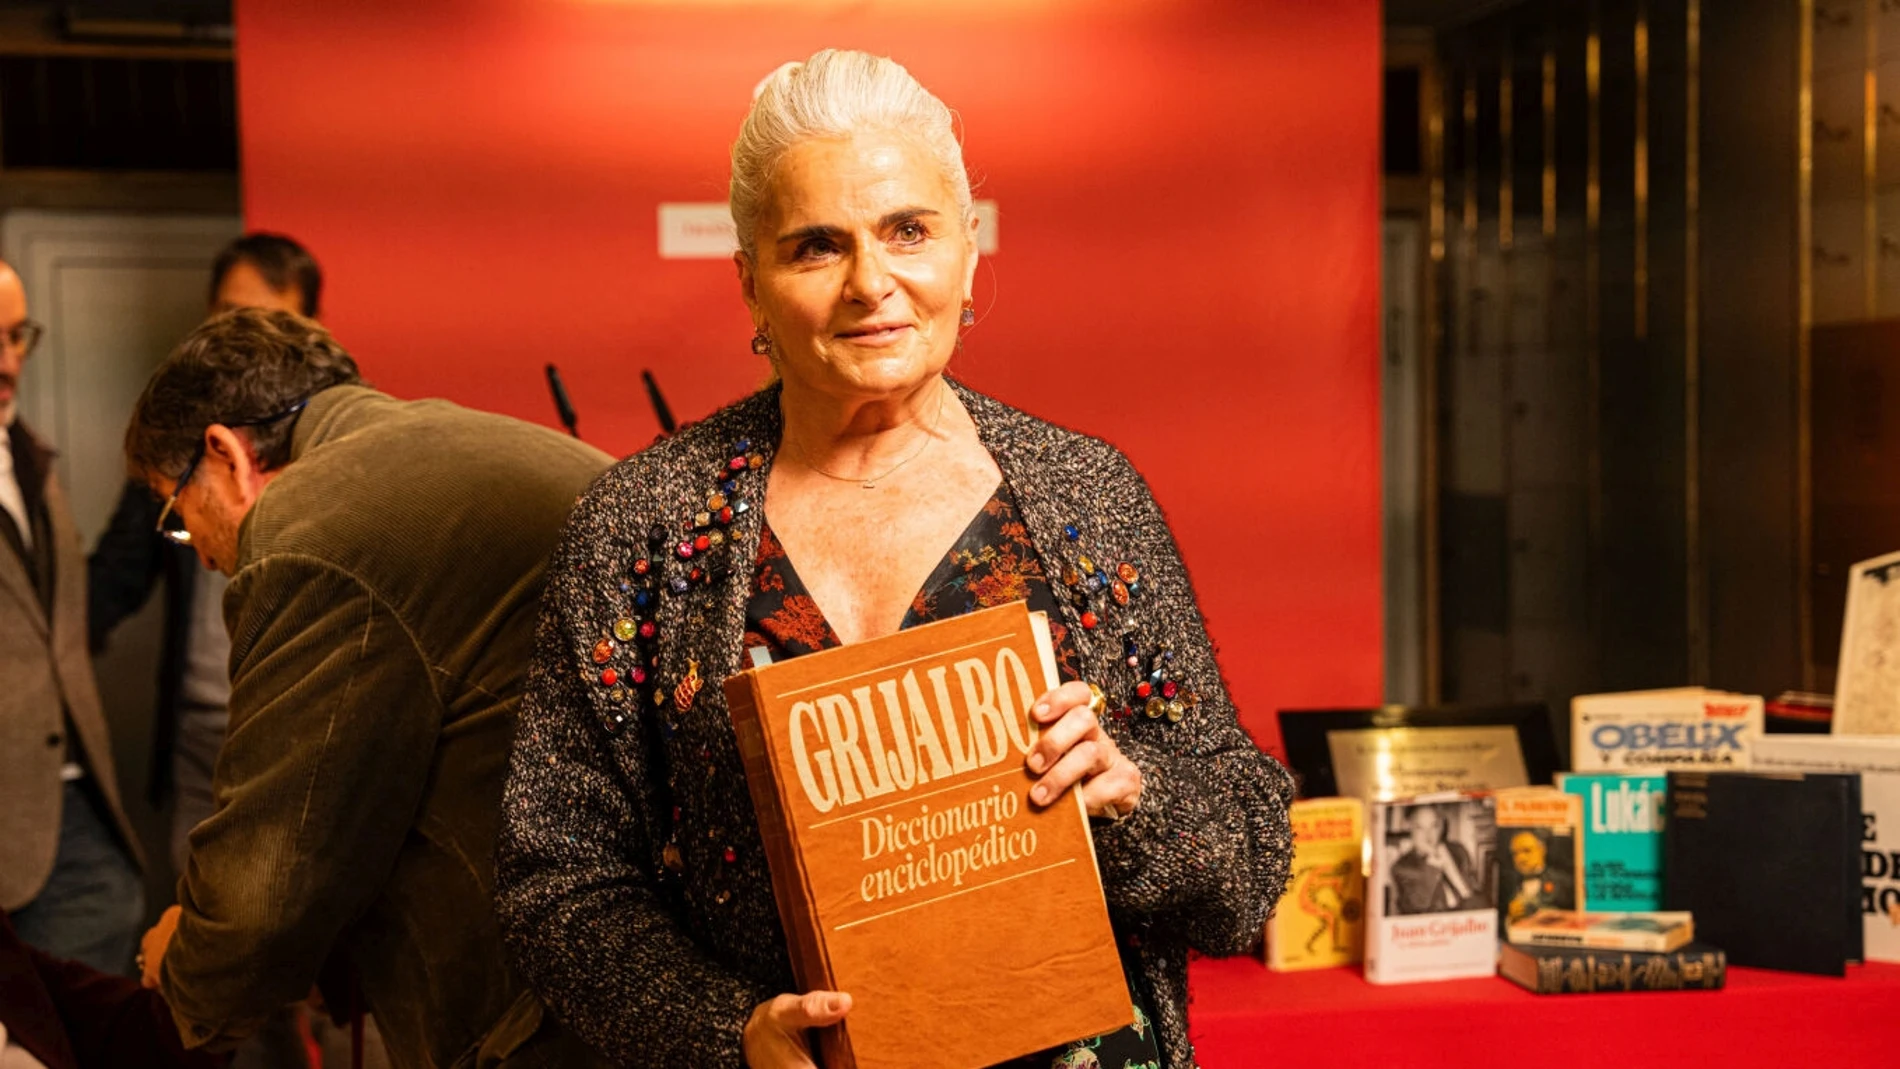 Poppy Grijalbo, hija del editor Juan Grijalbo, quien descubrió «El Padrino» y lo tradujo al español